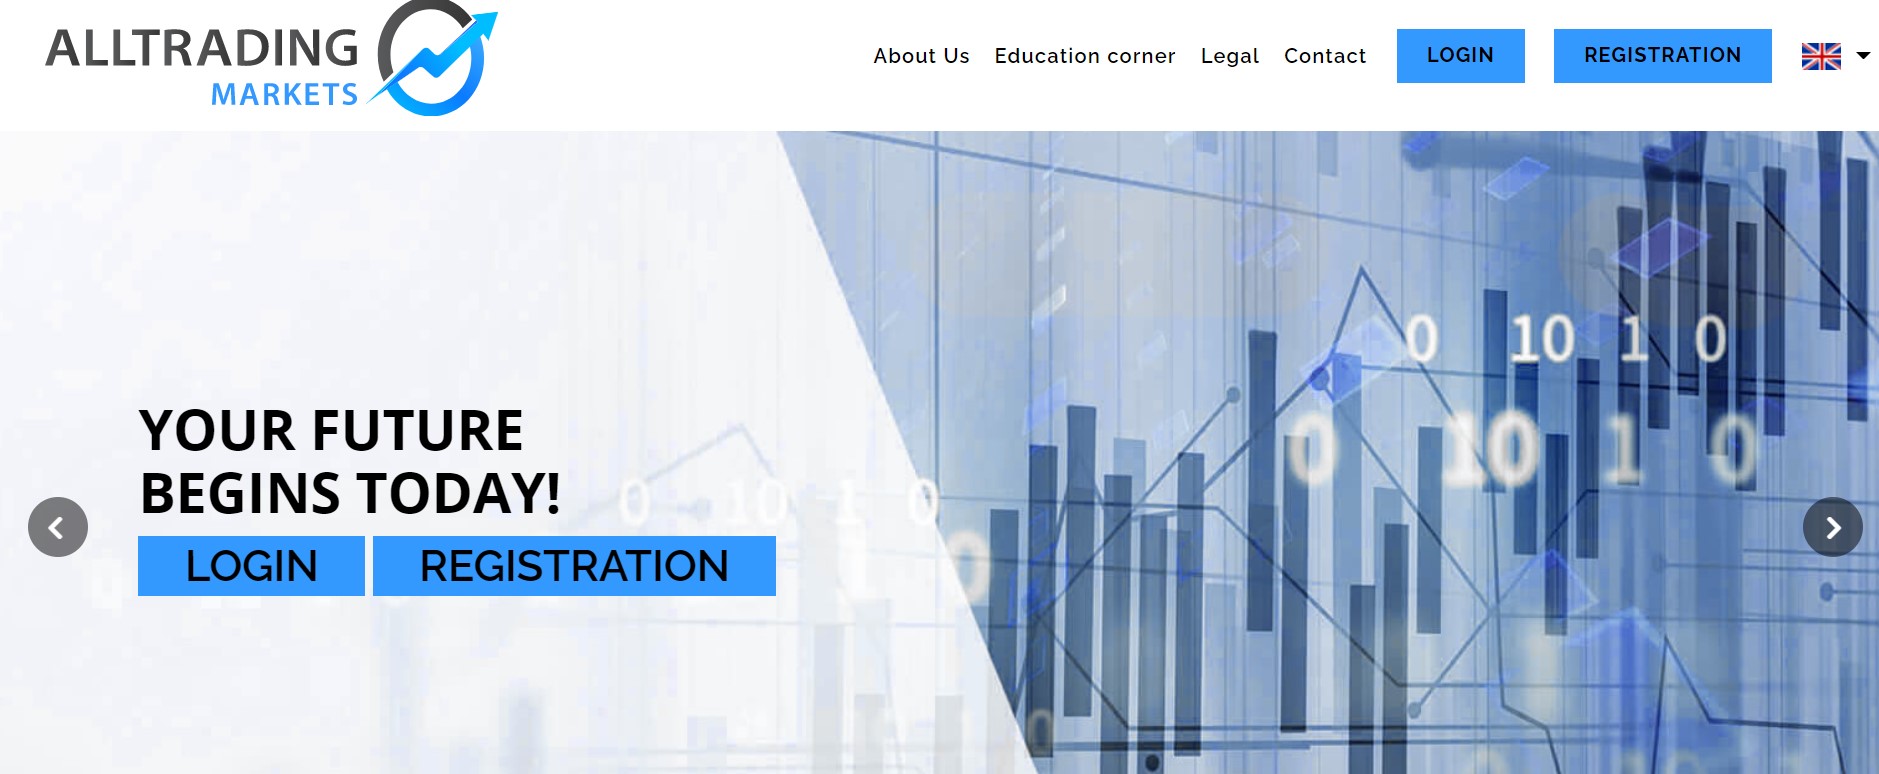 AllTrading Markets website